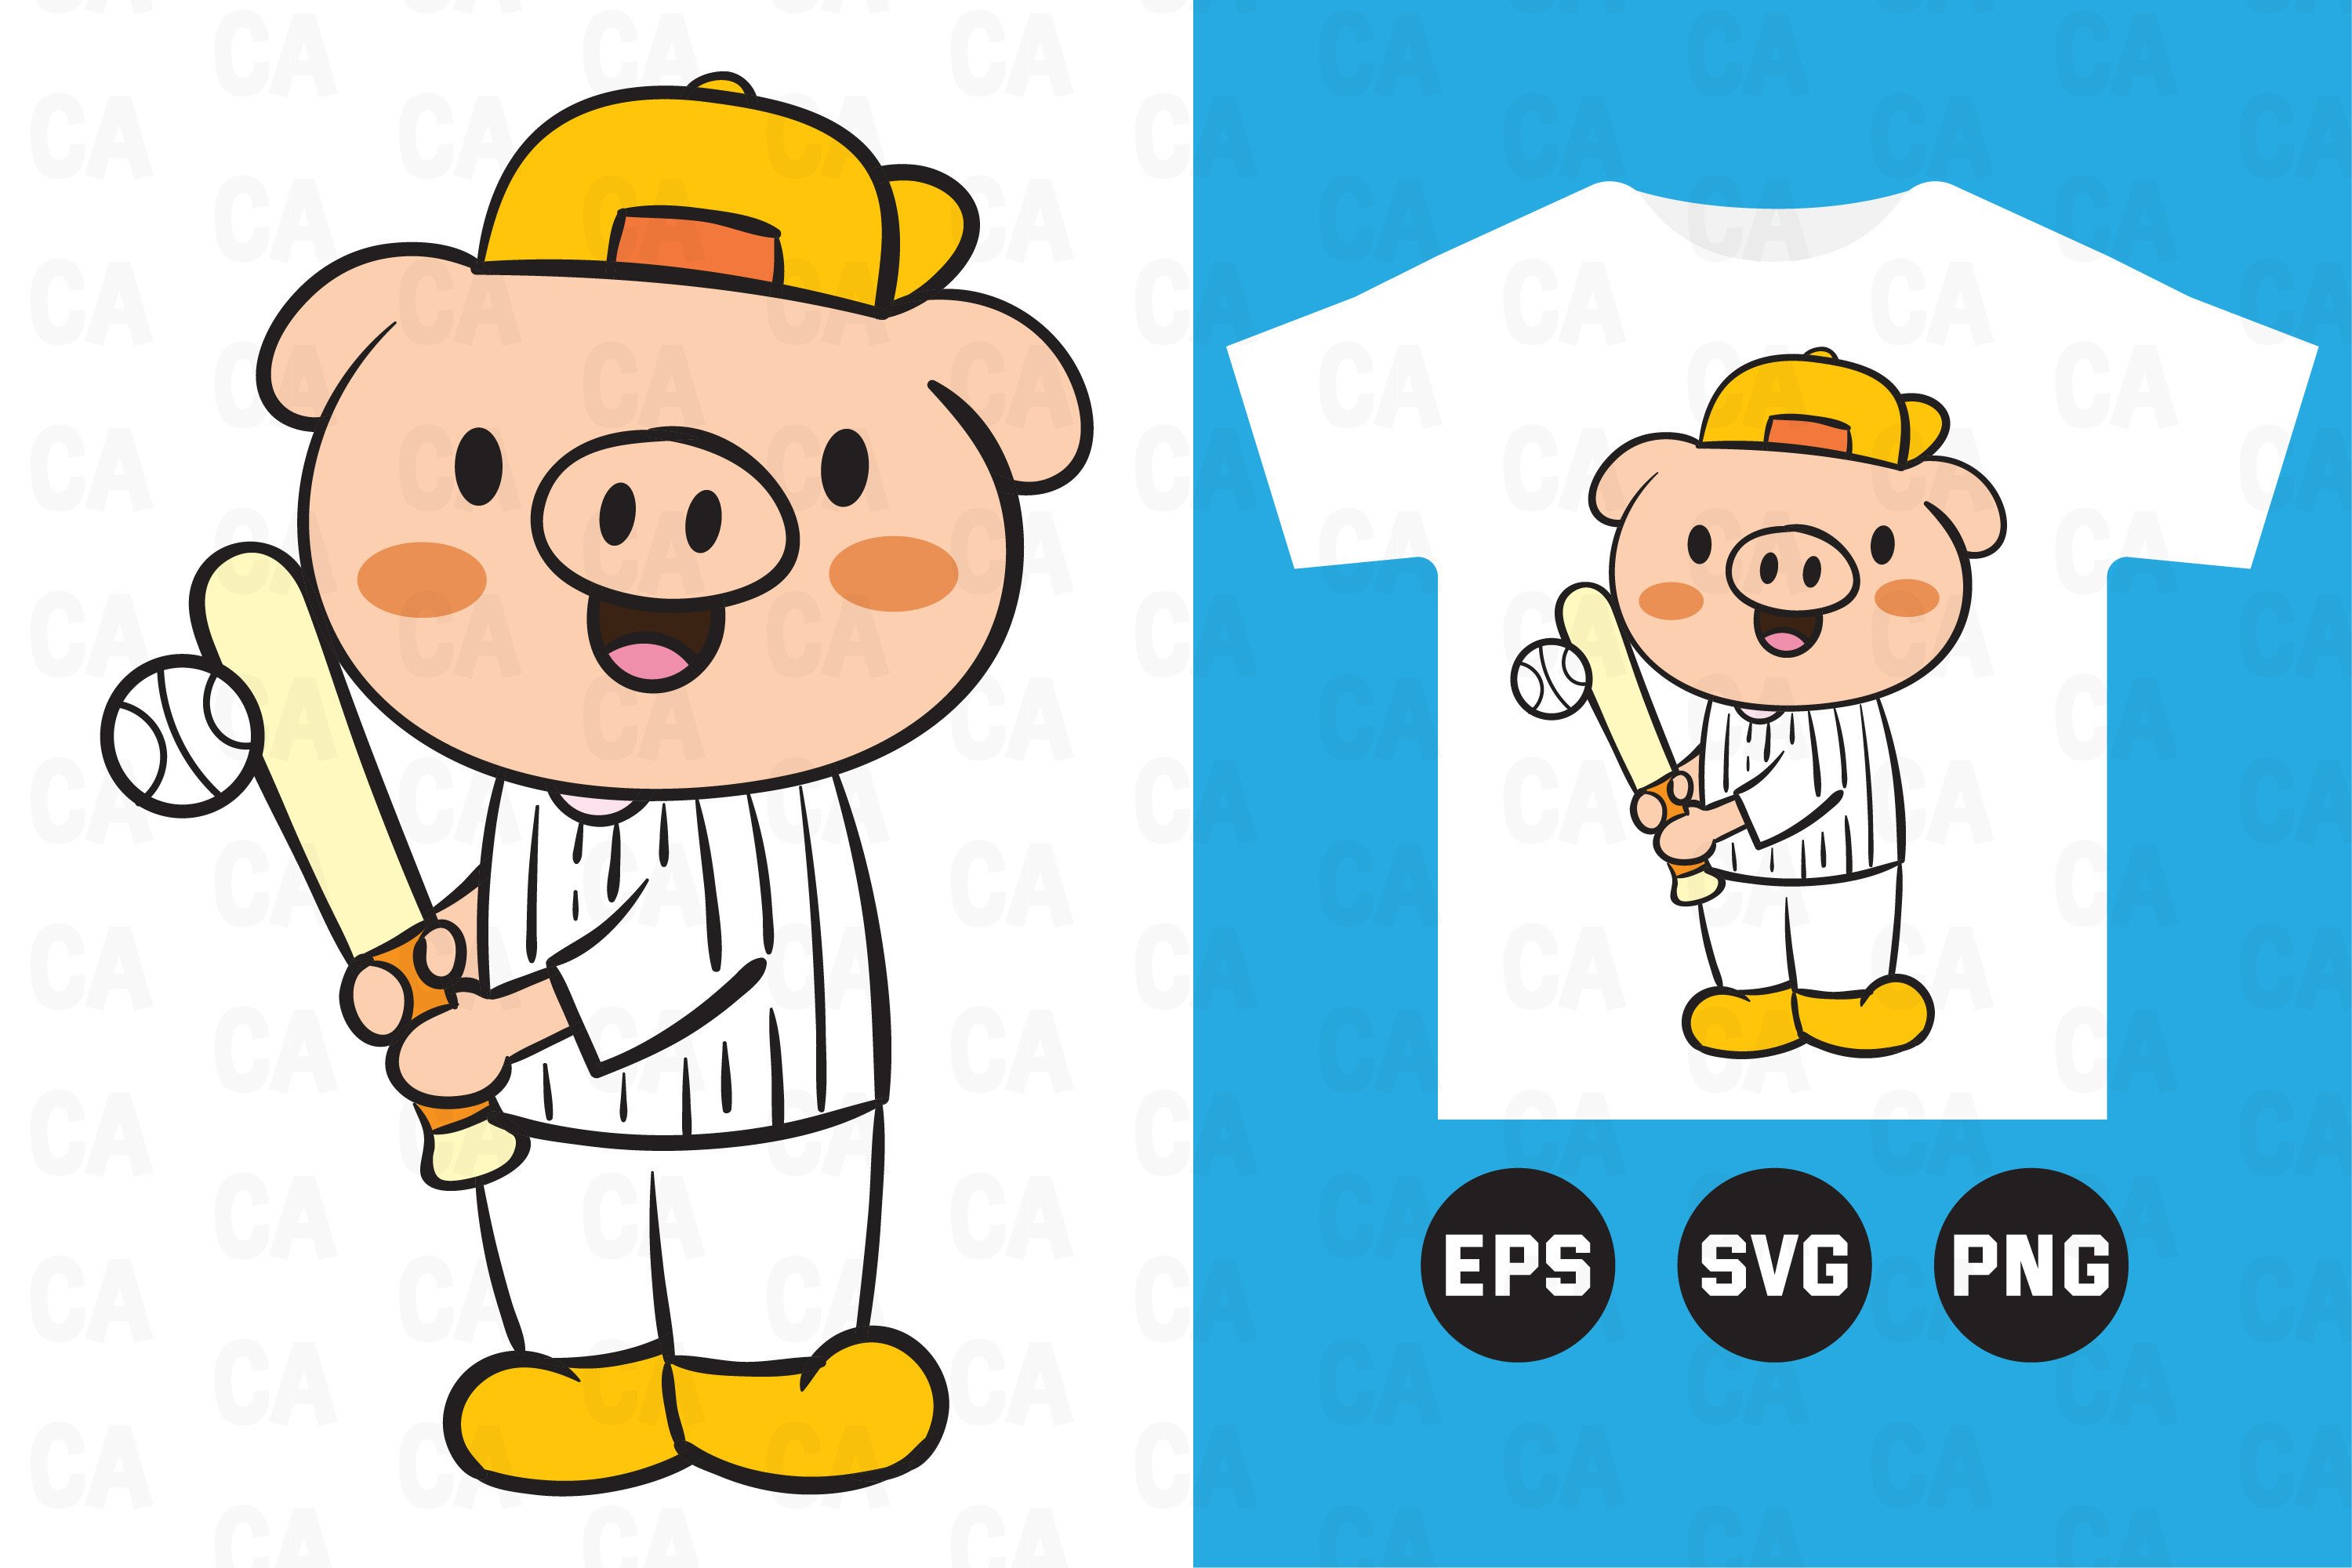 Pig Baseball Player Cartoon Kids T Shirt Graphic by Charen_art · Creative  Fabrica